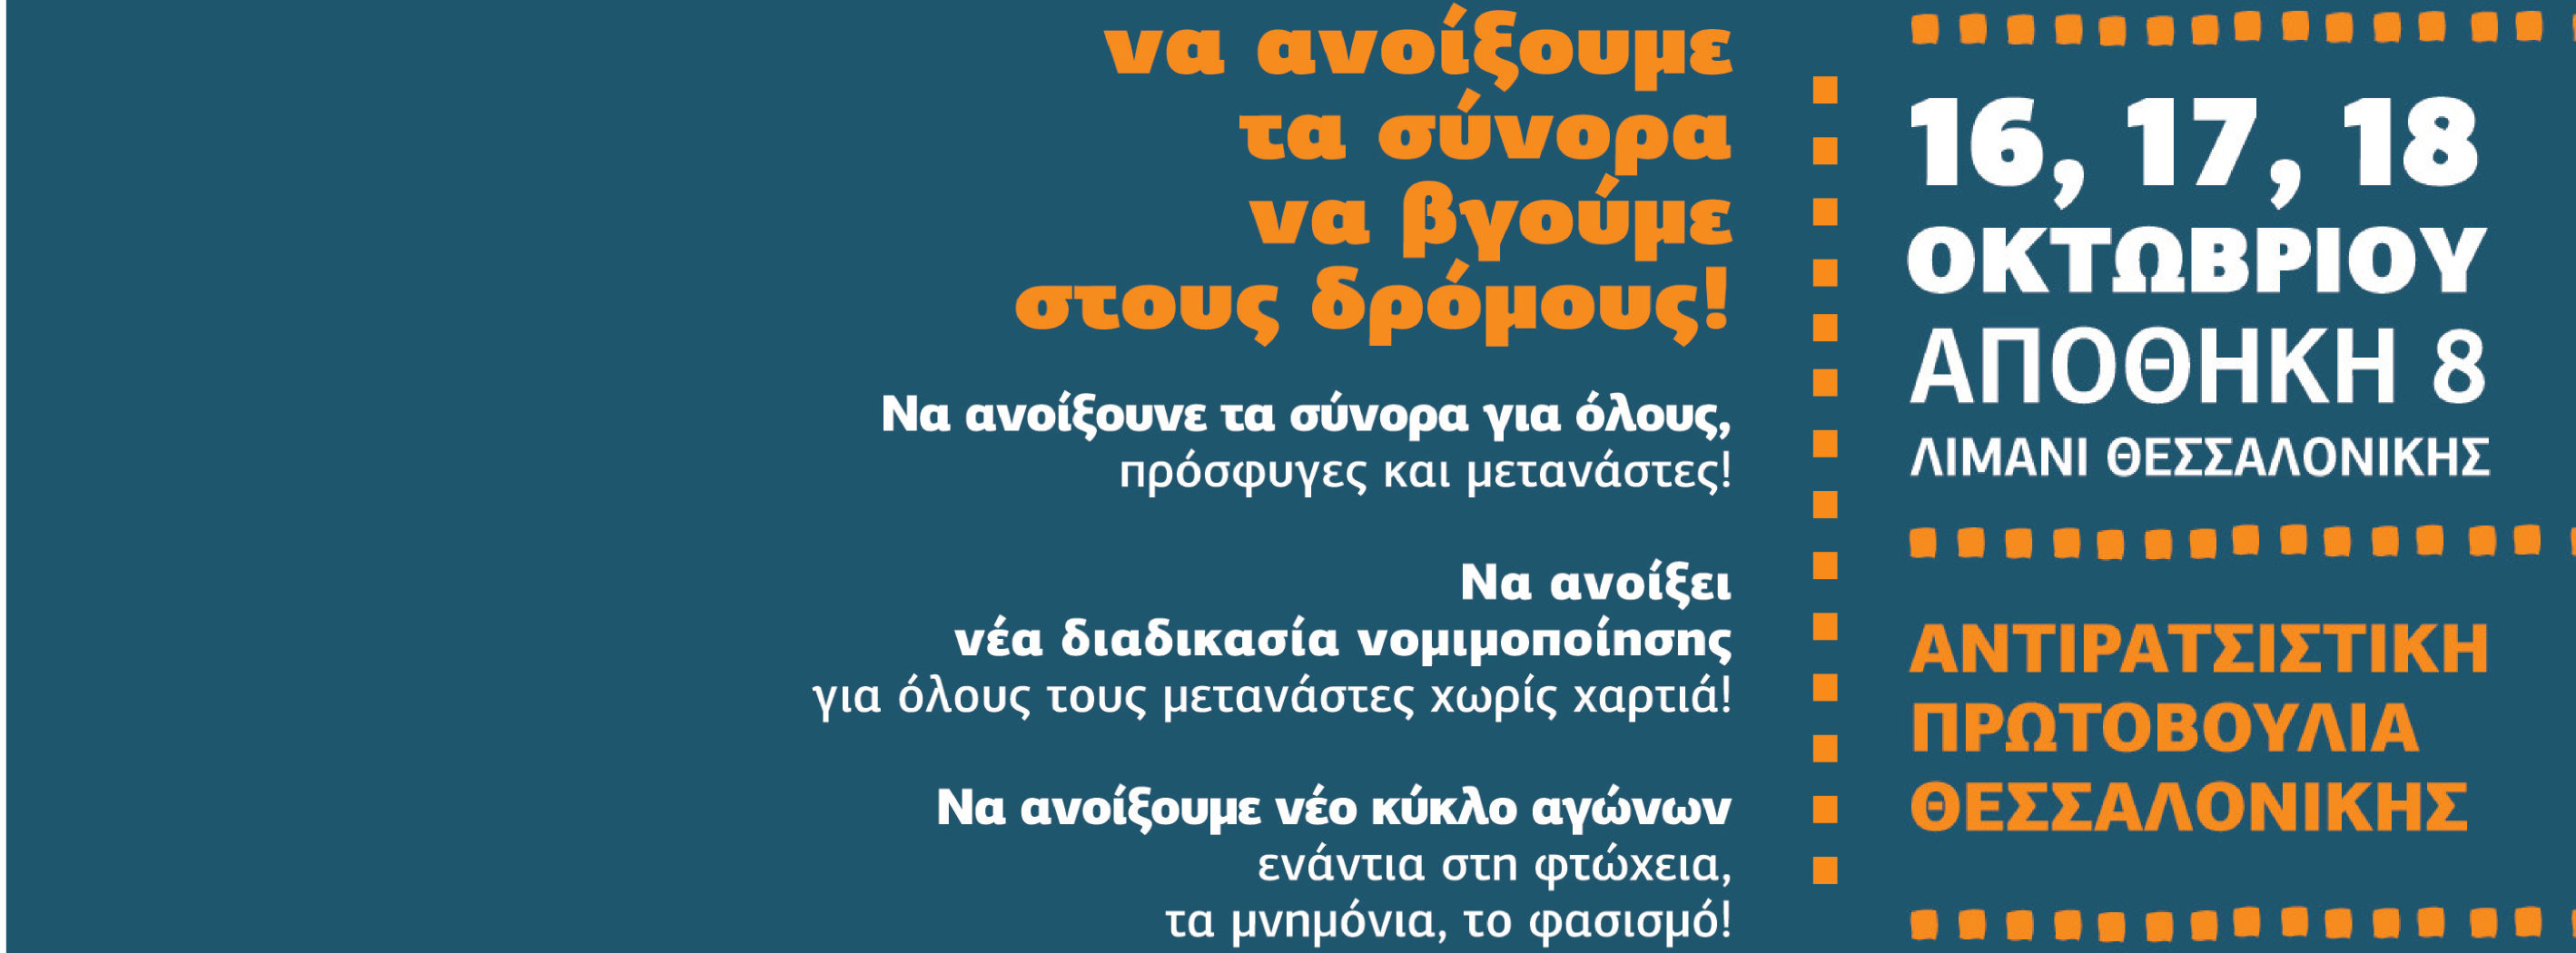 Για τη (μη) συμμετοχή του ΣΥΡΙΖΑ στο 18ο Αντιρατσιστικό Φεστιβάλ Κοινωνικής Αλληλεγγύης